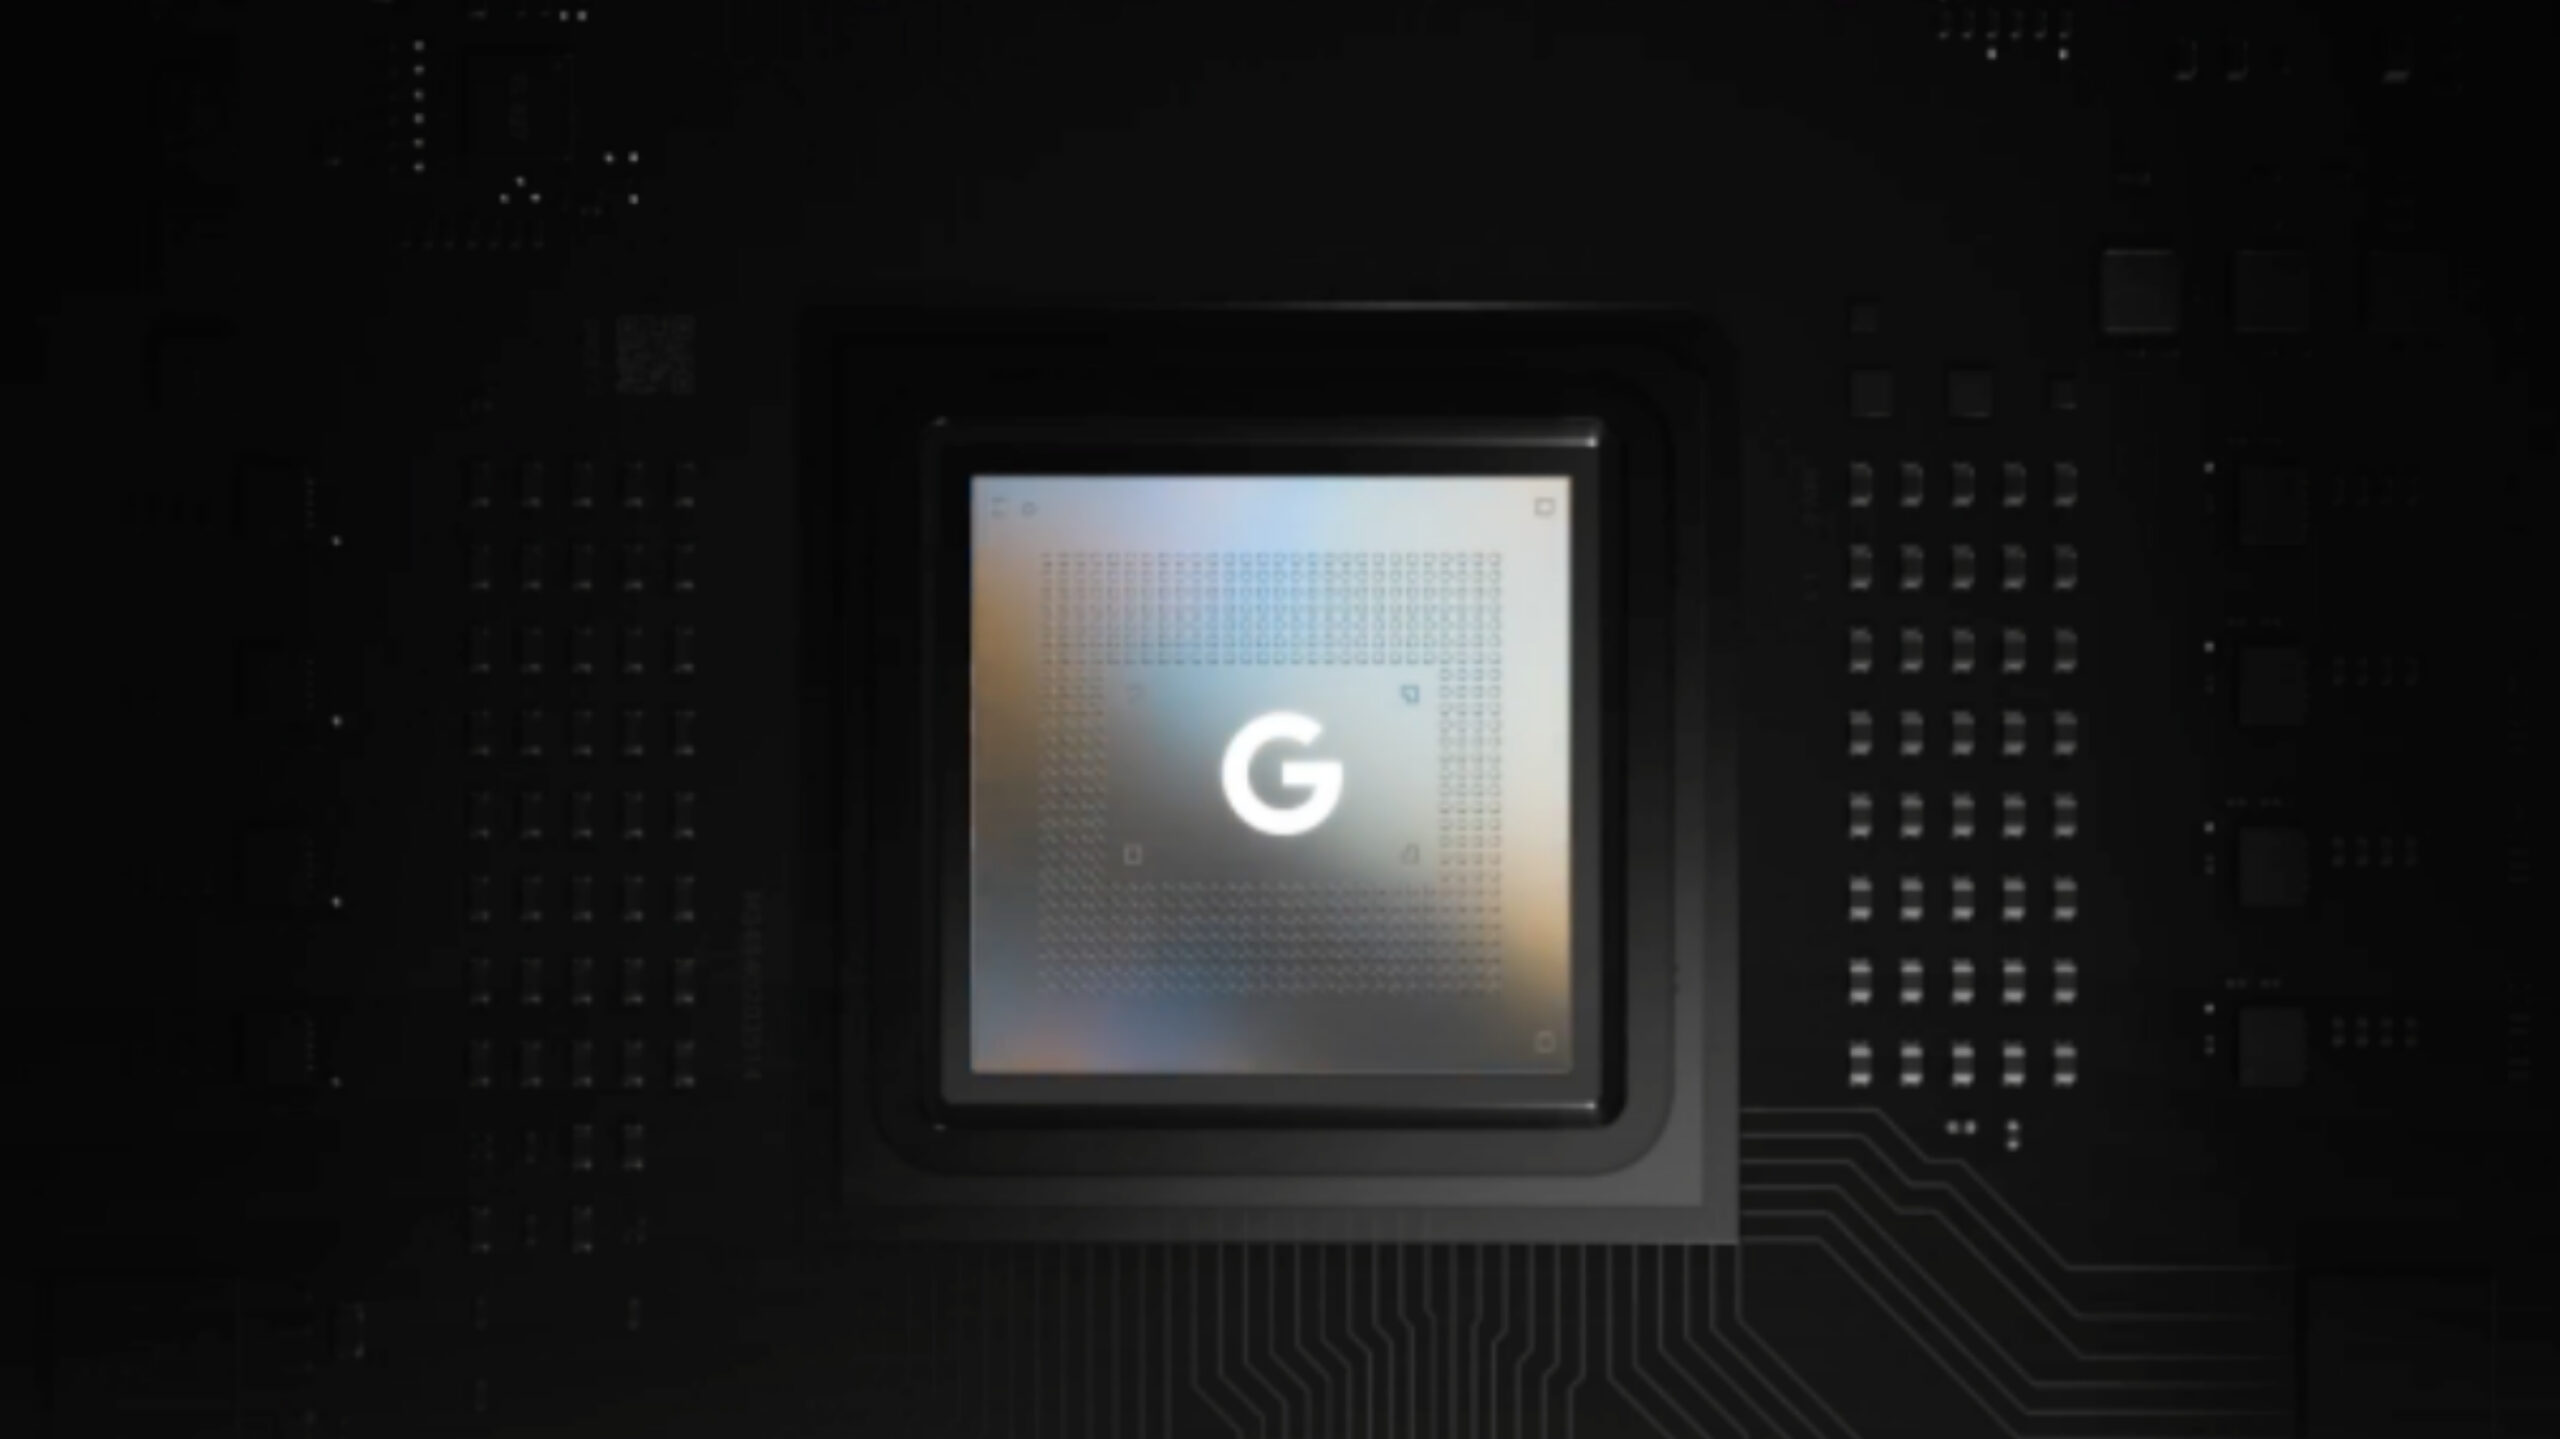 تراشه Tensor گوگل معرفی شد: امنیت بالا در کنار لیتوگرافی ۵ نانومتری سامسونگ